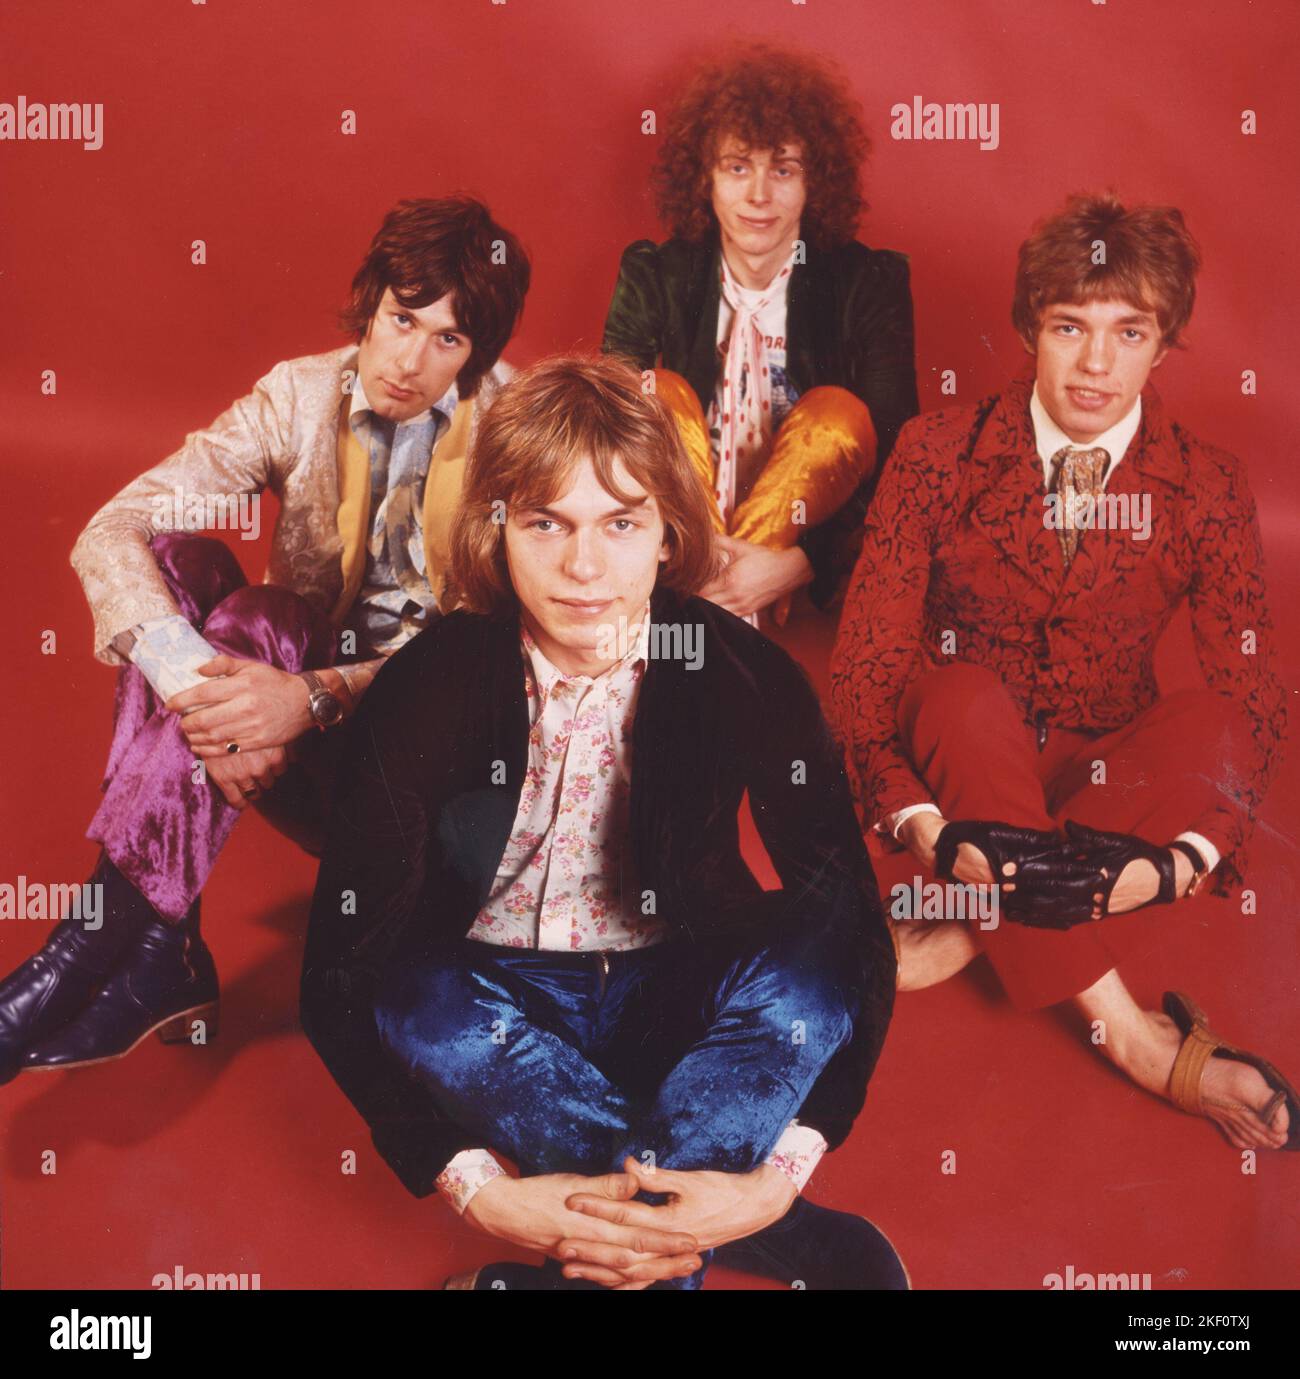 Die Musik von morgen berührte psychedelisches Rock, Pop und Freakbeat. Gitarrist Steve Howe kam spät zu Yes, Sänger Keith West hatte mit 'Excerpt from a Teenage Opera' einen britischen Nummer-zwei-Hit (der Pete Townshends Tommy inspirierte). John 'Junior' Wood an der Bassgitarre, Mark P. Wirtz Keyboards. Drummer Twink schloss sich den Pretty Things und später den Pink Fairies an. Drei Bands wurden konsequent als Galionsfiguren der ersten Generation britischer Psychedelien zitiert: Pink Floyd, The Soft Machine und Tomorrow. Stockfoto